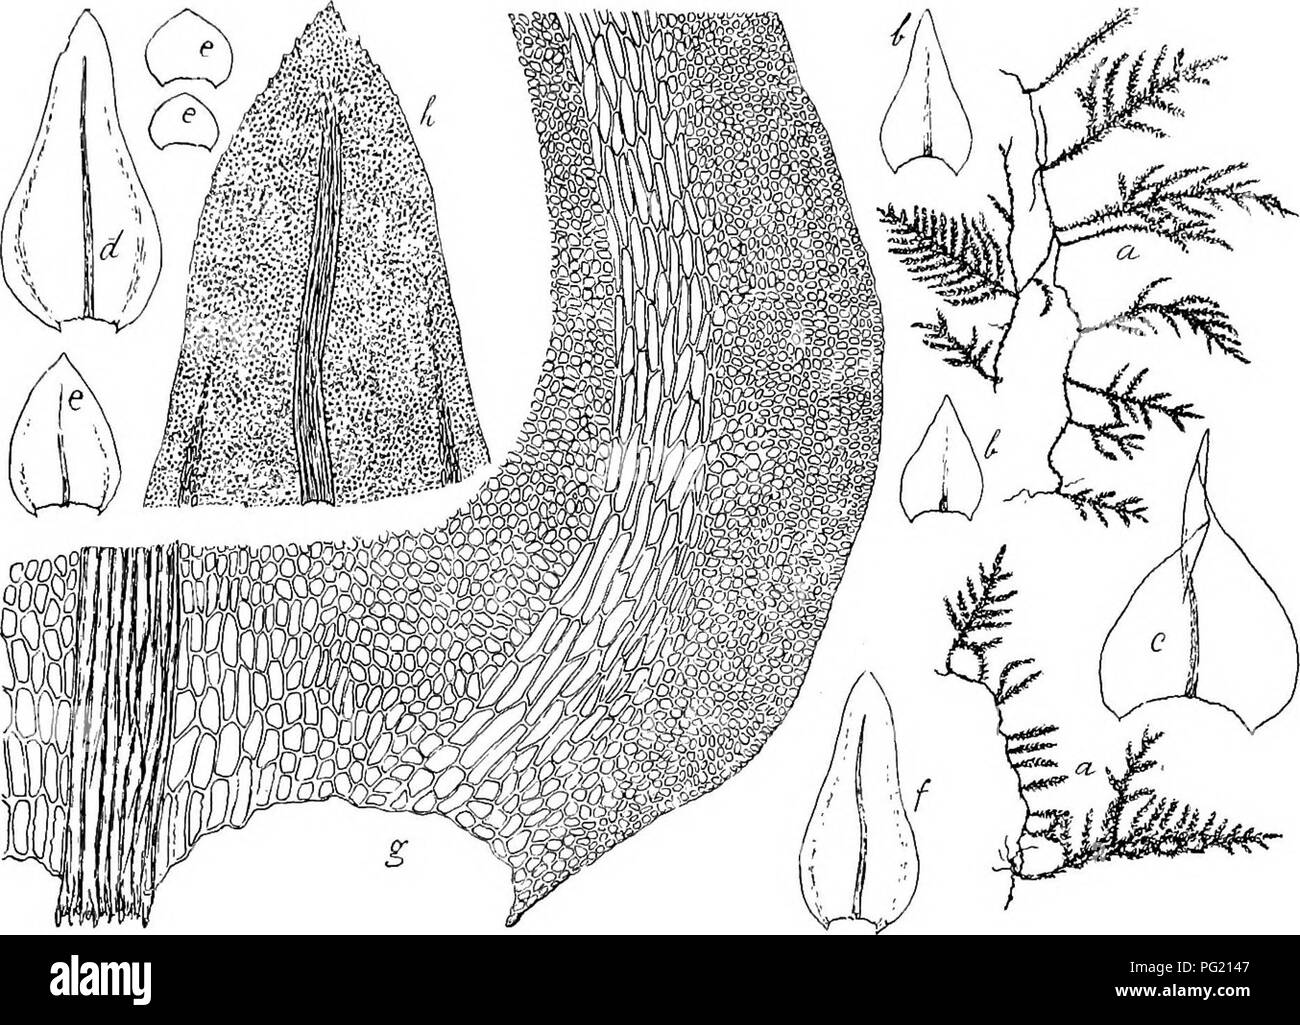 . Flore de Buitenzorg. Botany. 923 Seiten der Blattrander ein 5â8 Zellen breites, iutrala- minales Band langsgestreckter, gelblicher, 15 â 45 ^i. langer Fk. 101.. BhmataUa inii-alimbafa Klsch. a. Habitusbild (natiirl. Grosse). b. Niedei'blaltcr dcs priraai-oQ Stengels &quot;/â c. Niedeiblatt dcs scciindaren Stengels ',&quot;â¢ d. Laubblatt des sccundaron Stengels Â°. a. Gnindblattcr der Acste Y- /. Astblalt V- g. Blattgrund mil den intralaminal verliin- gerten ZcUen j^. h. Blatlspitze -jâ Z el leu, welche wait vor der Spitze in die rundlichen Lamina- zellen ubergehen; die 10â15 Reihen ausser Stock Photo